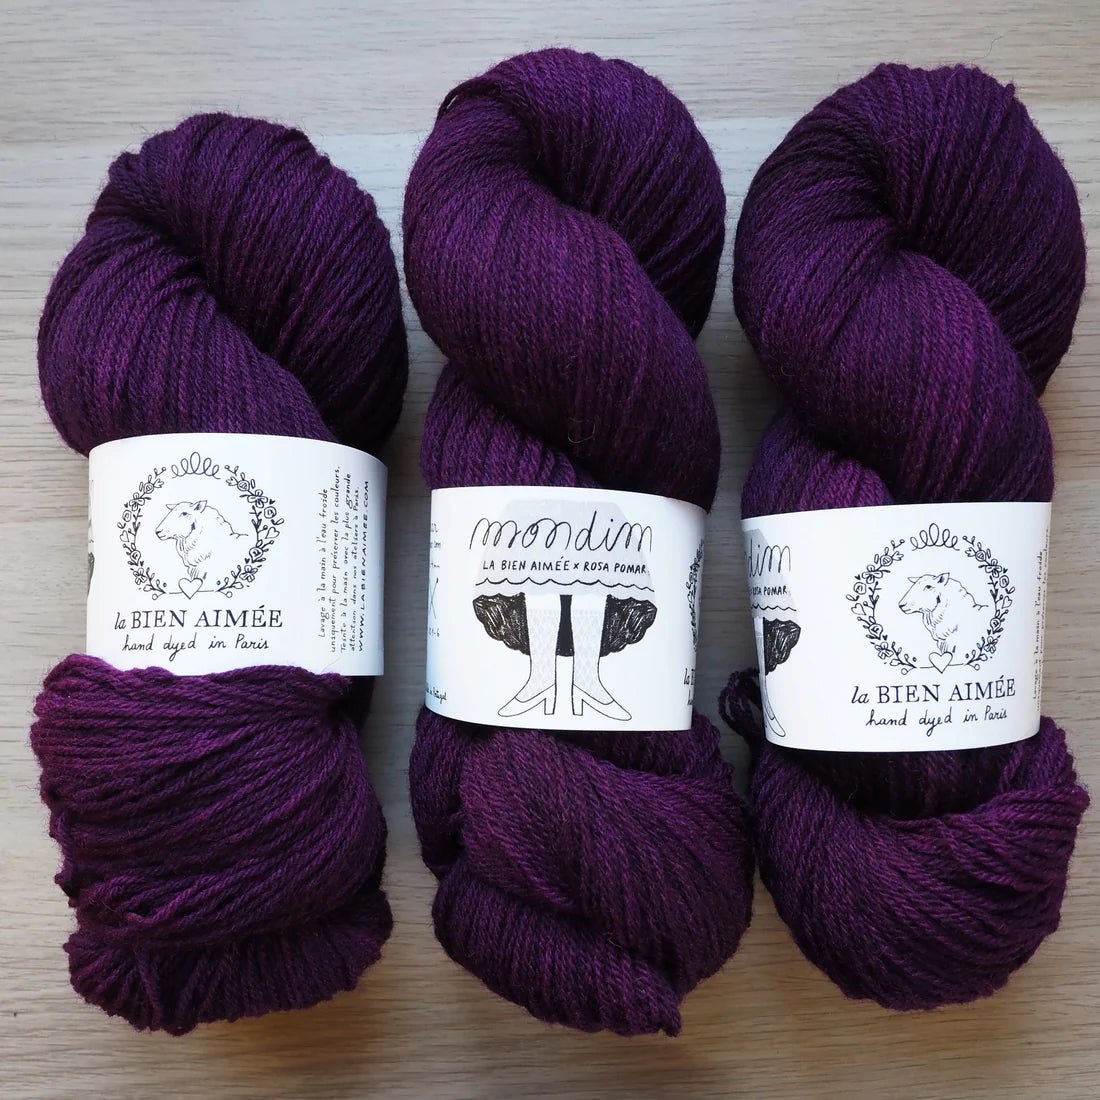 La Bien Aimée Mondim - La Bien Aimée - The Flying Knitter - The Little Yarn Store